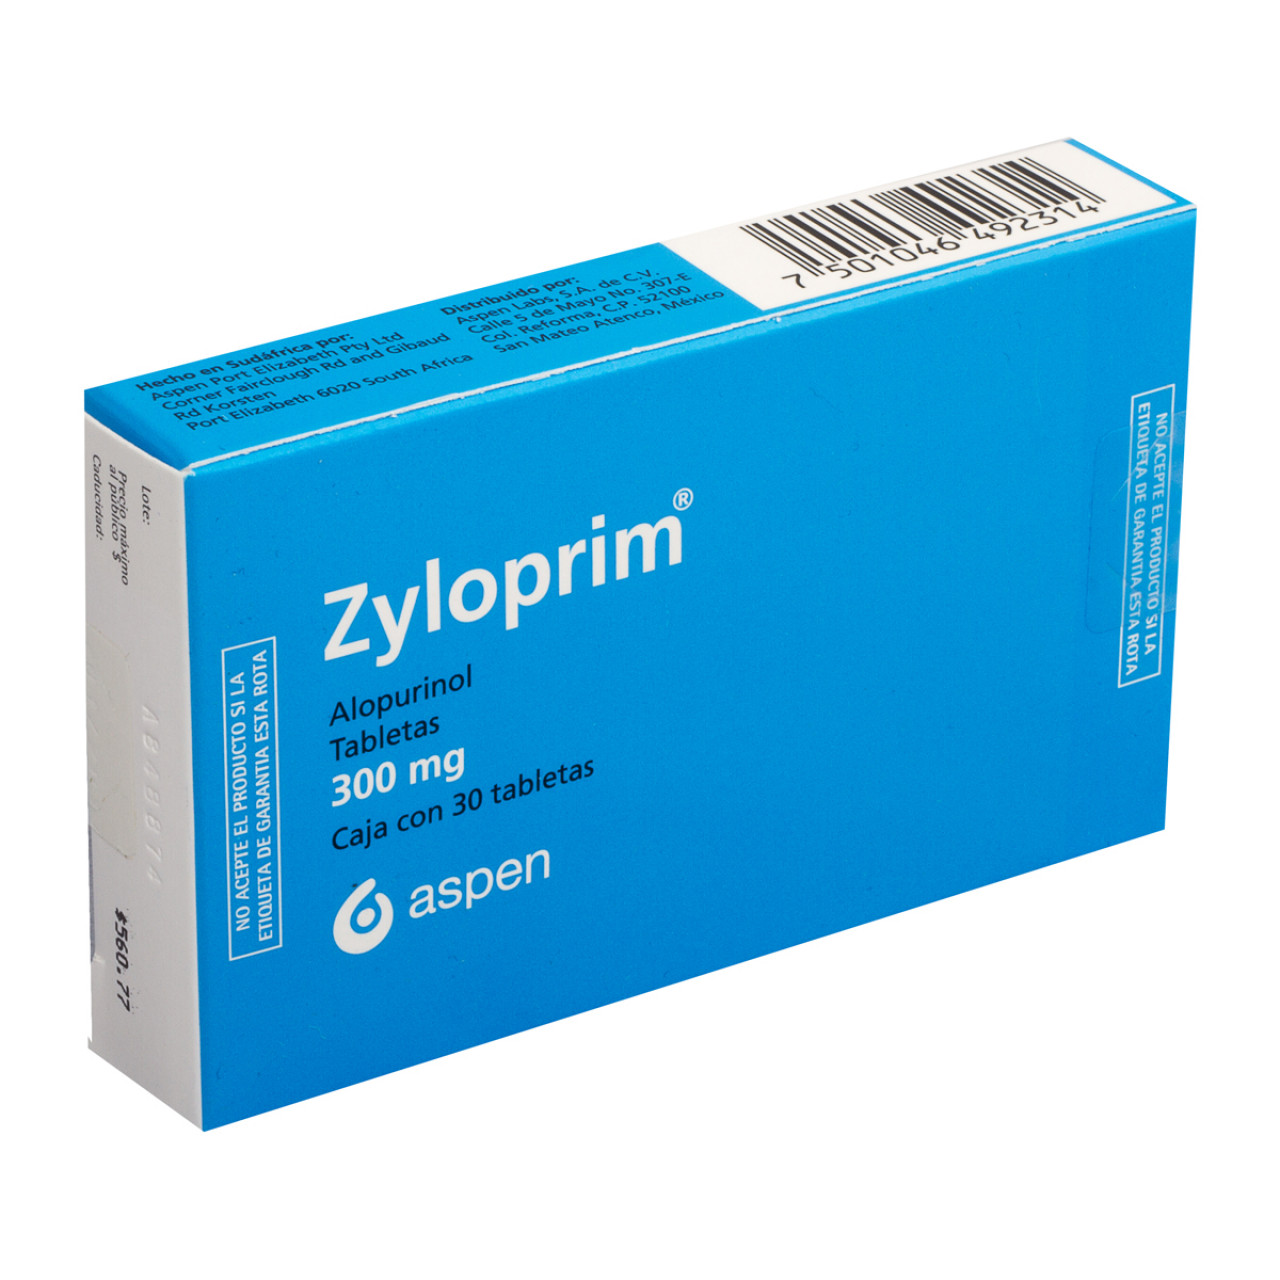 zyloprim 300 mg 60 tabletas para que sirve